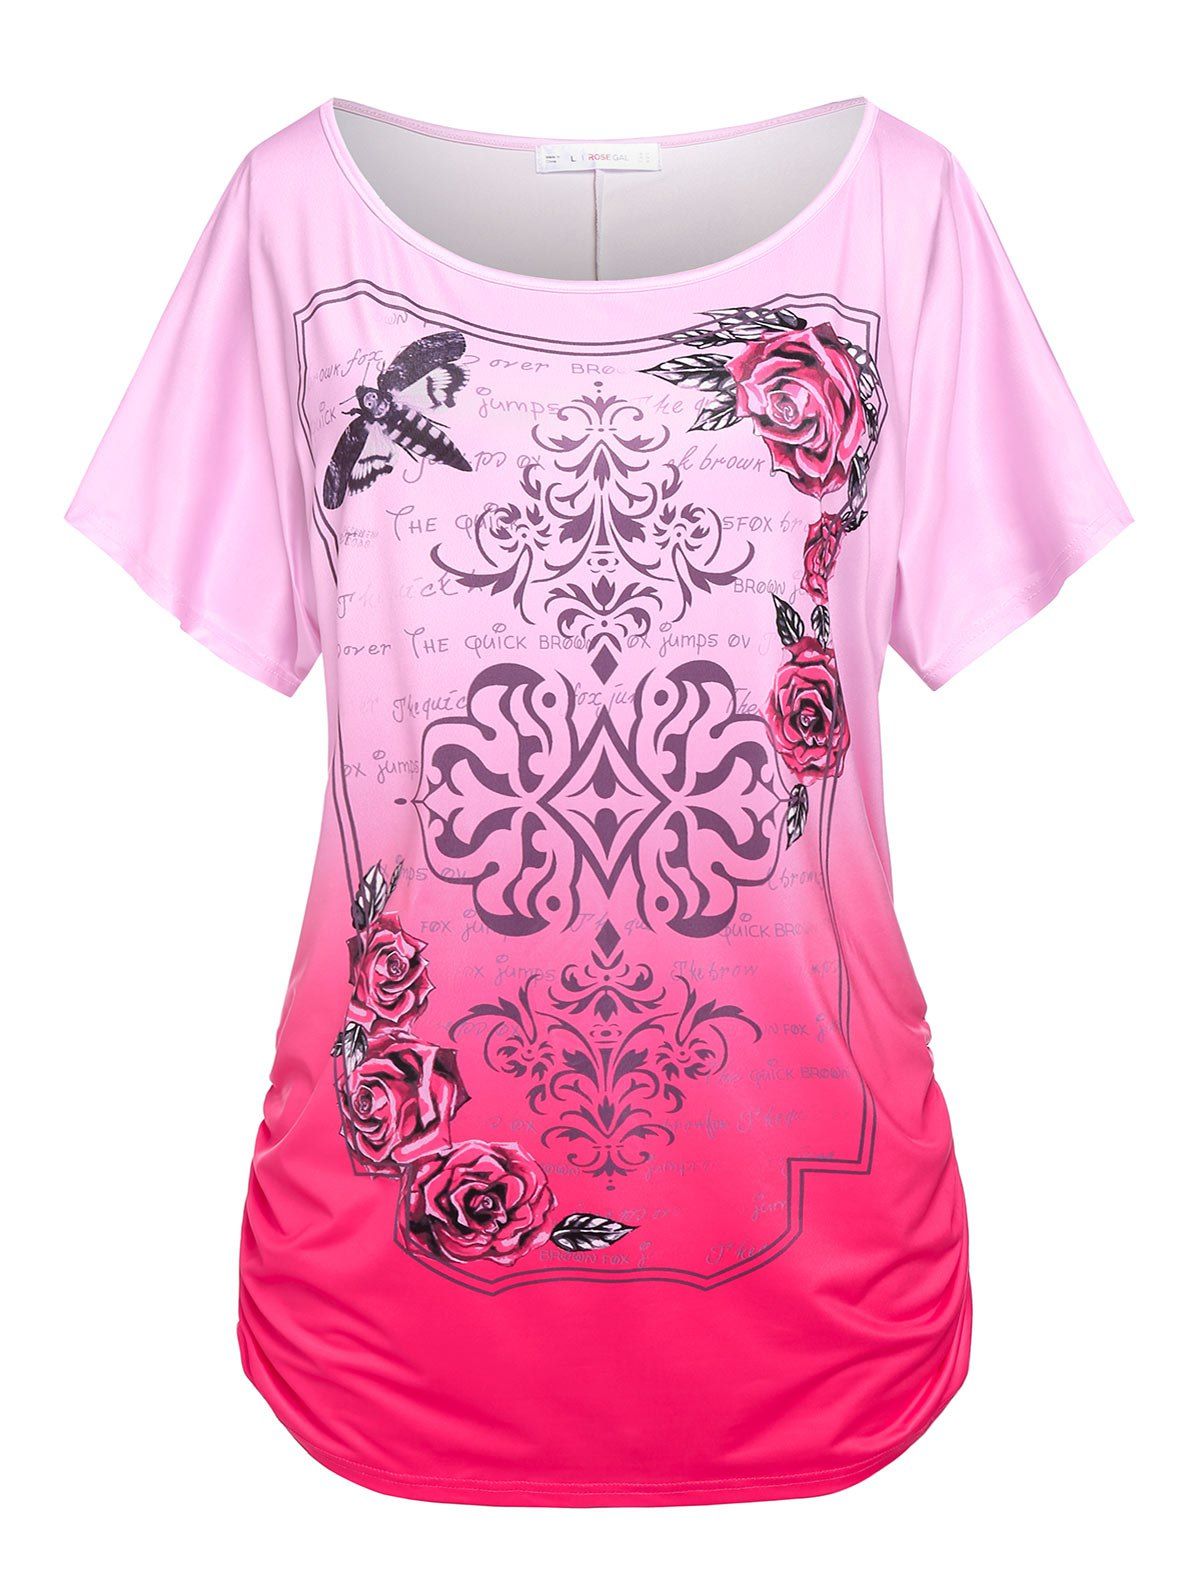 T-shirt Fleur Slogan de Grande Taille à Manches Chauve-souris - Rose clair 3X